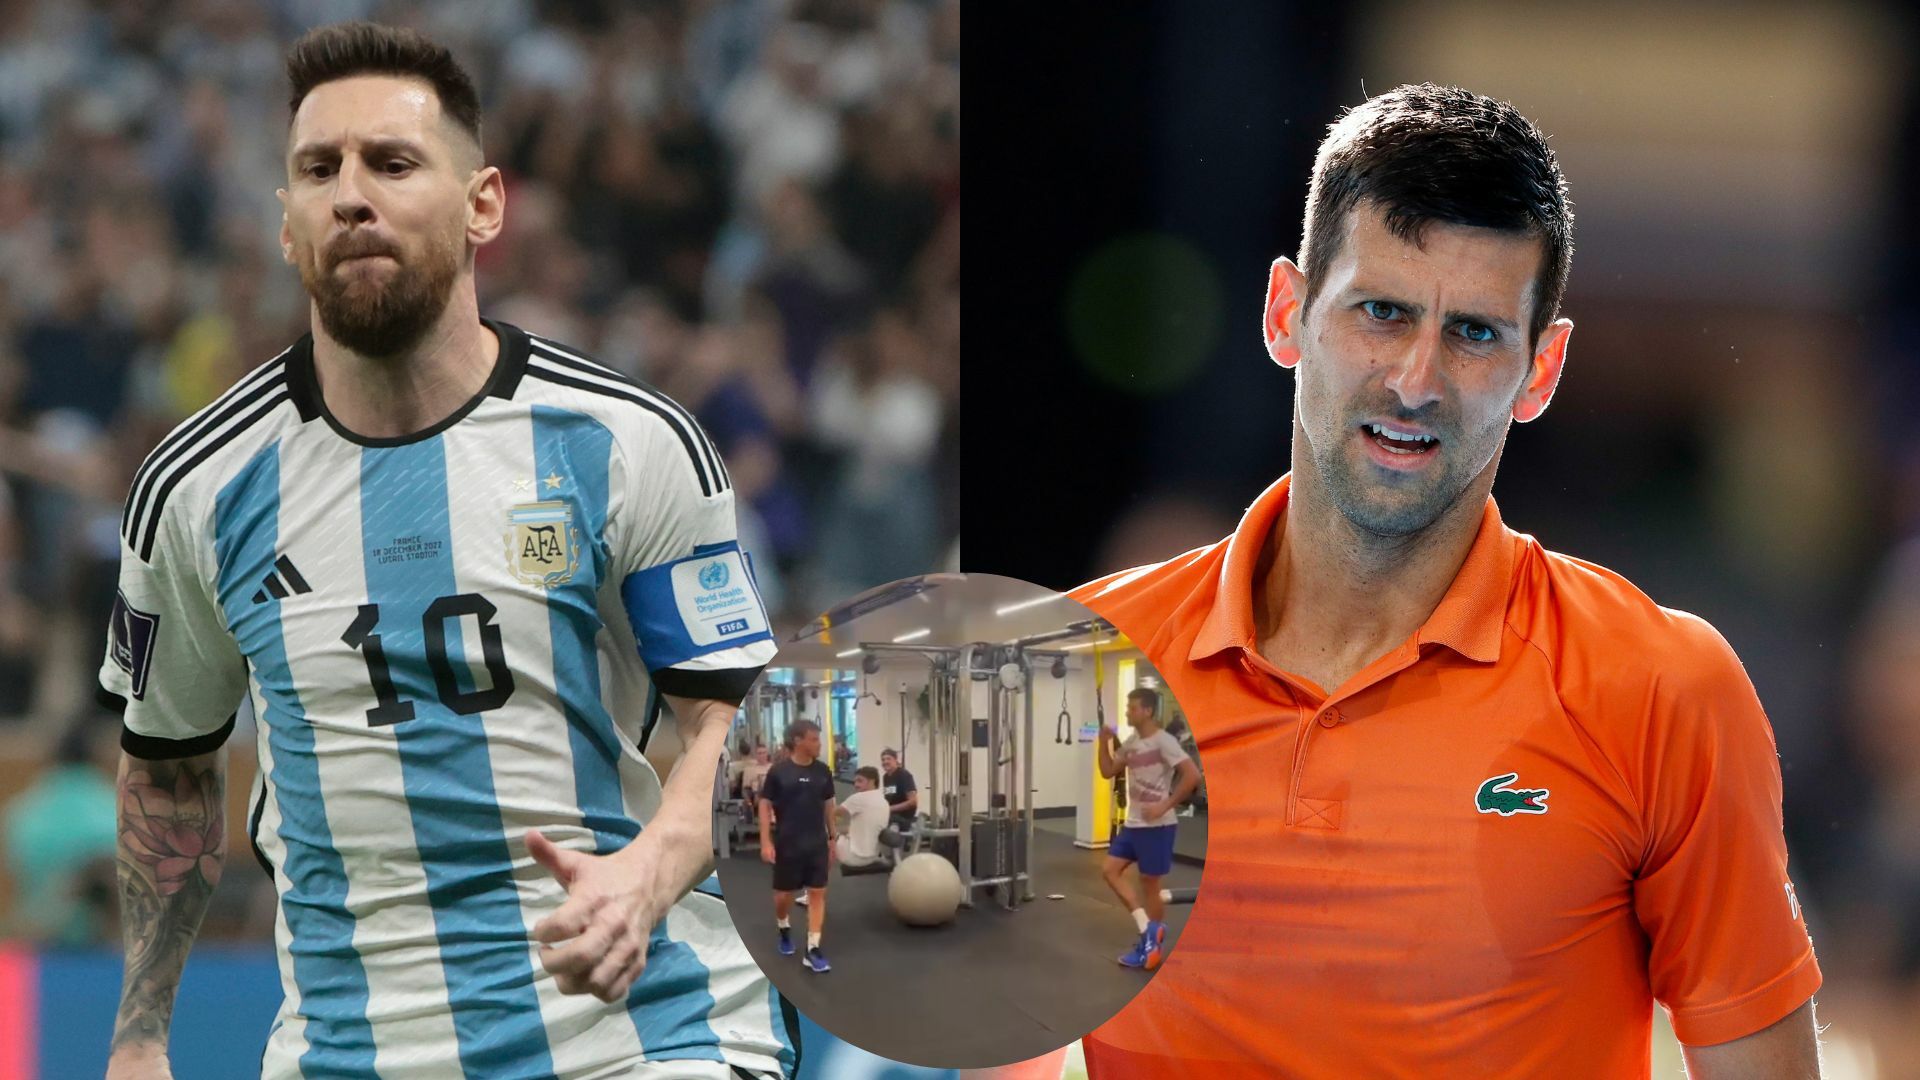 '¿Qué mirás bobo?', Novak Djokovic se mofa e imita a Messi